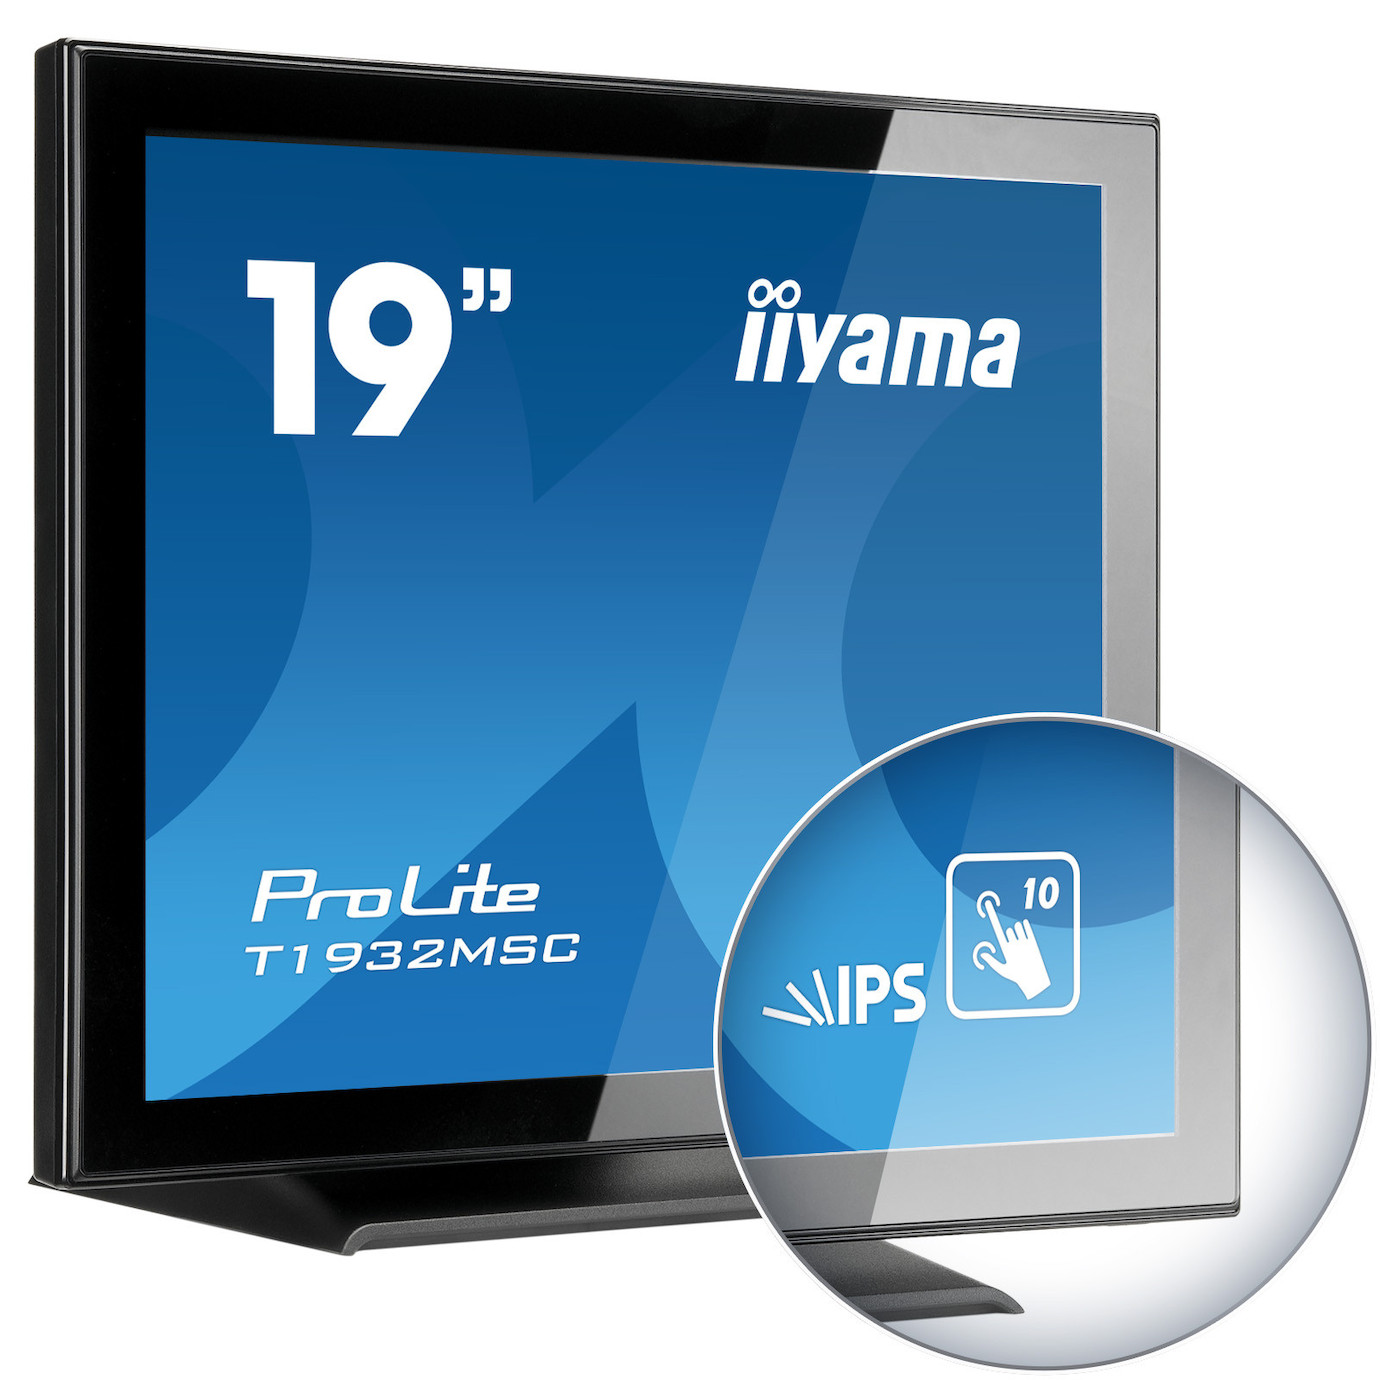 Vorschau: iiyama T1932MSC-B5X 19" LCD Monitor mit SXGA und 14ms Reaktionszeit